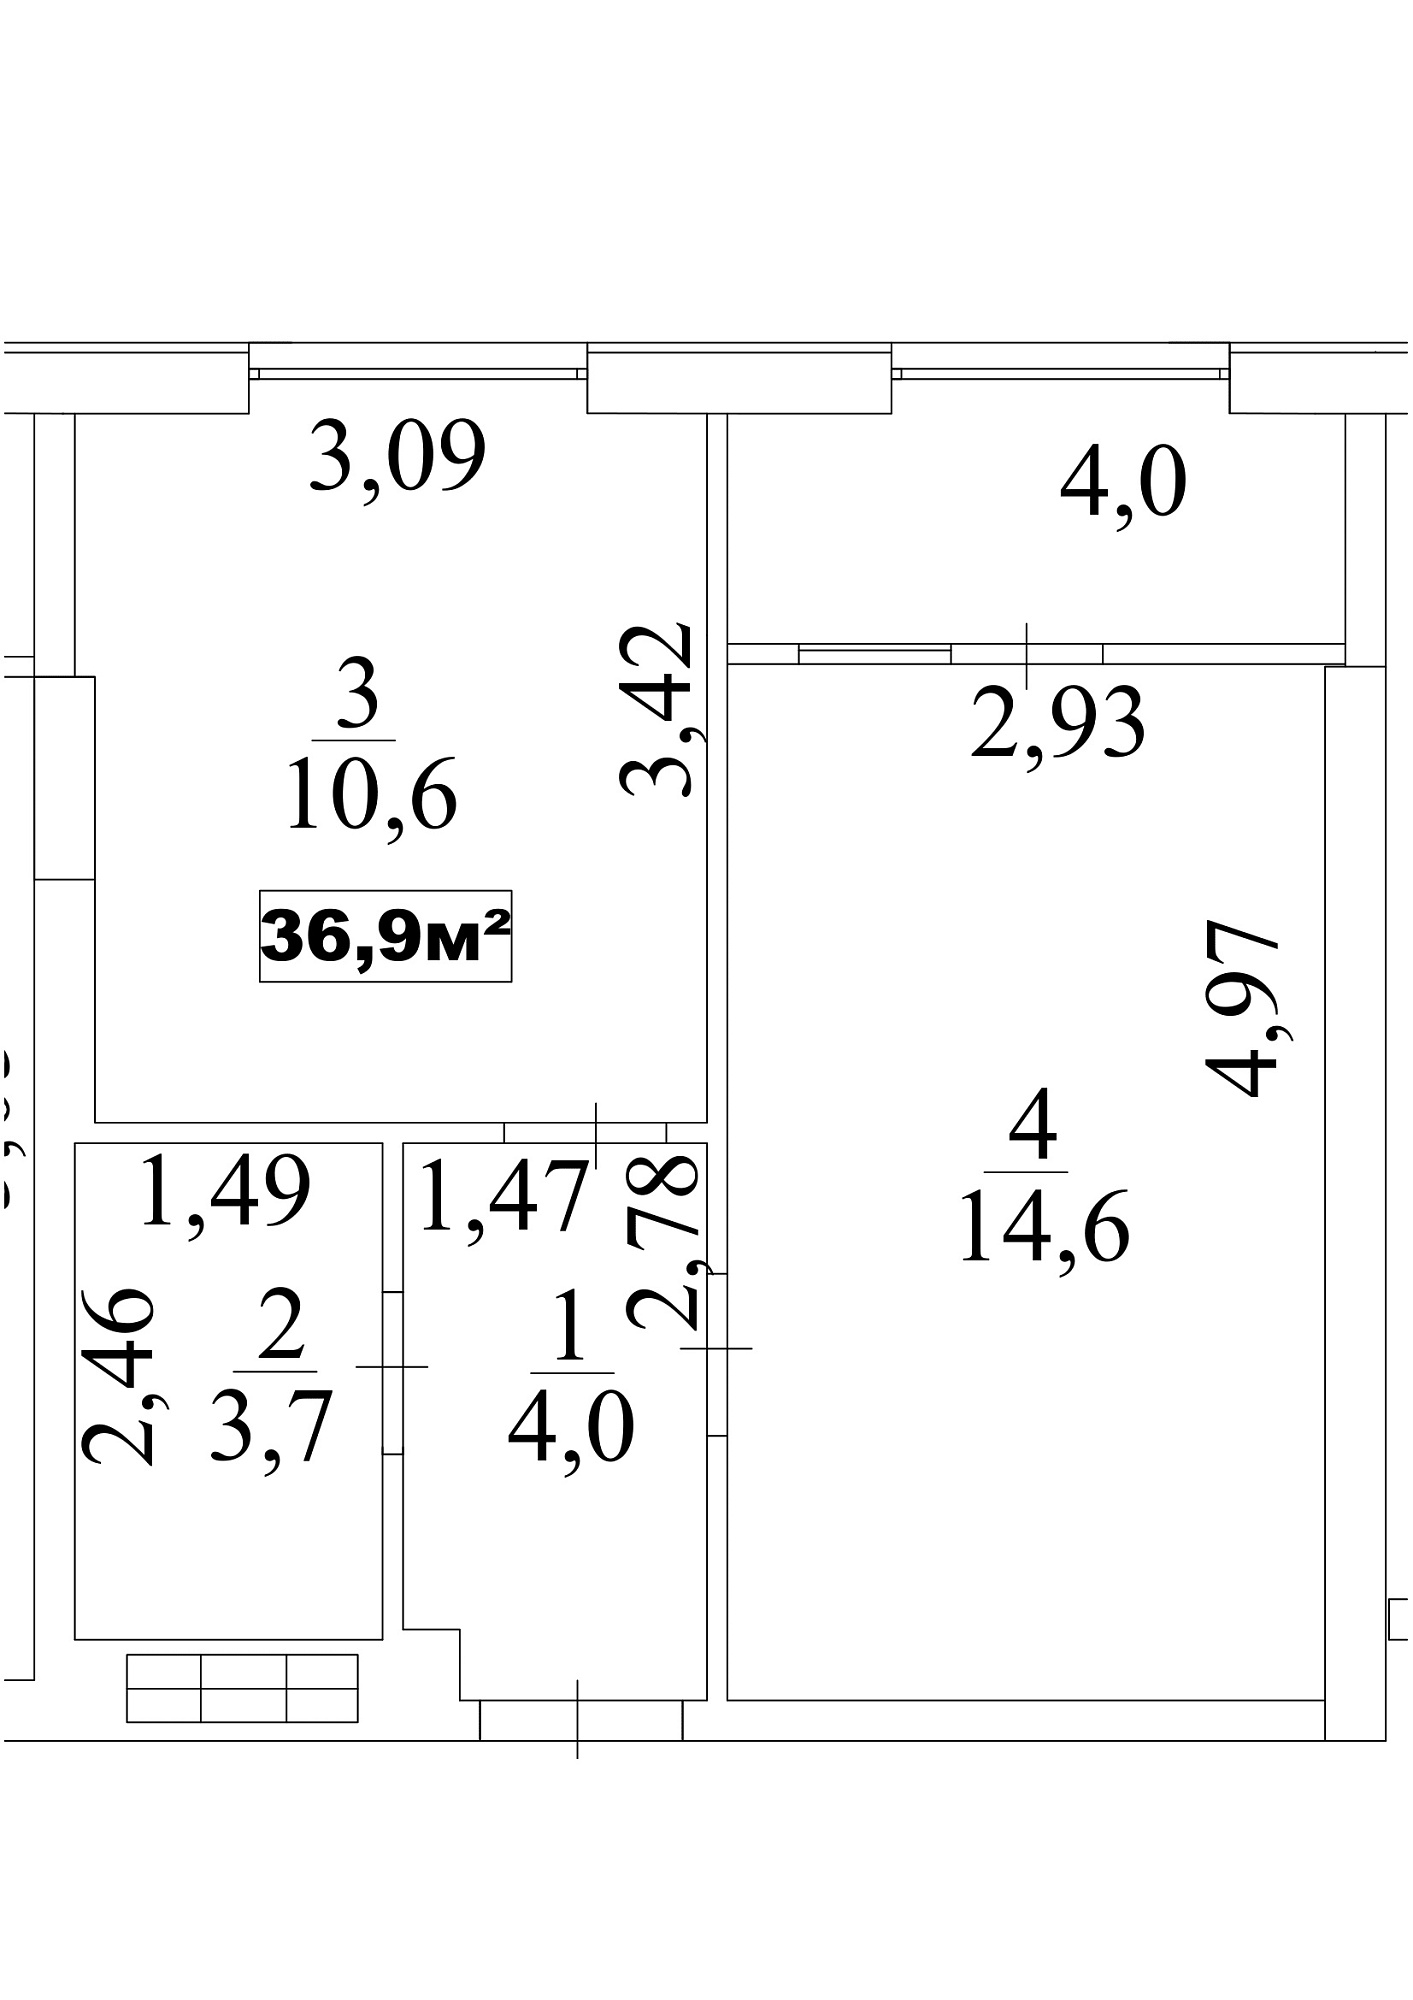 Планировка 1-к квартира площей 36.9м2, AB-10-07/0061а.